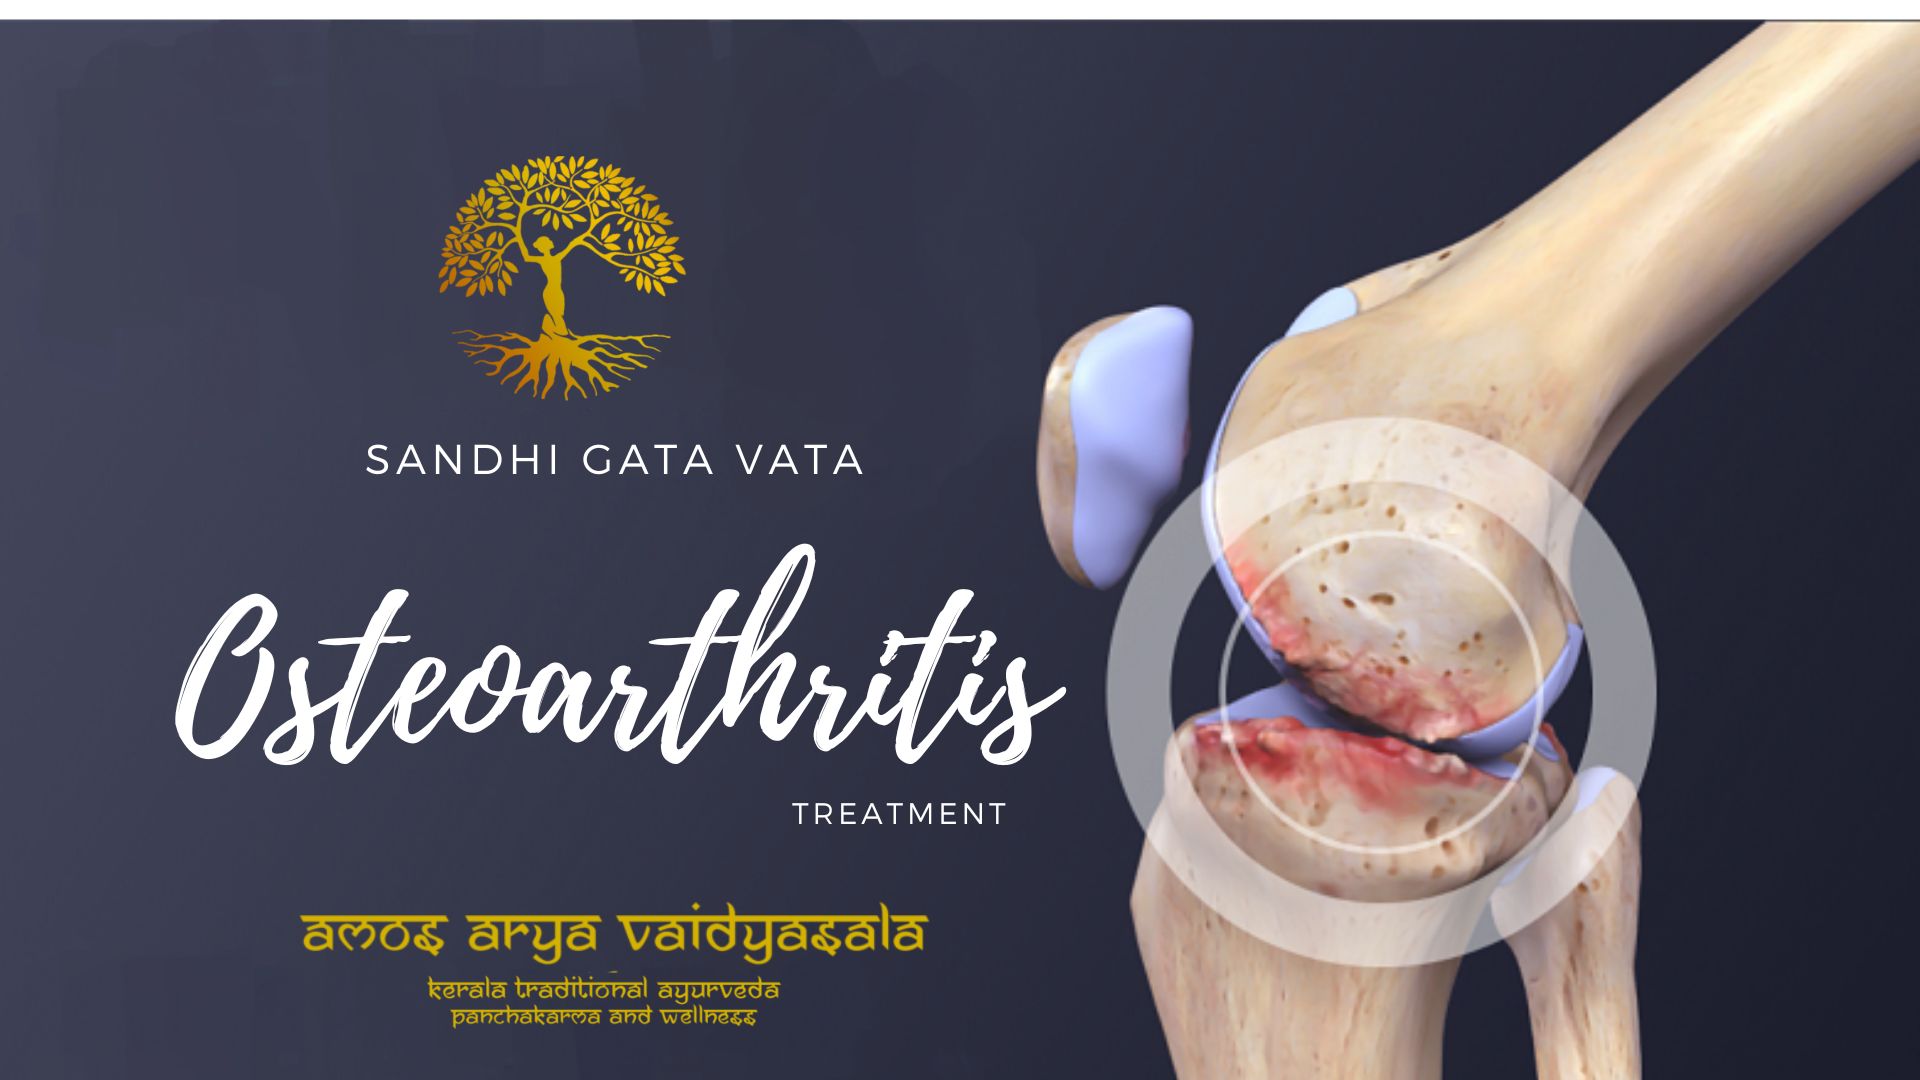 Osteoarthritis Ayurvedic treatment 